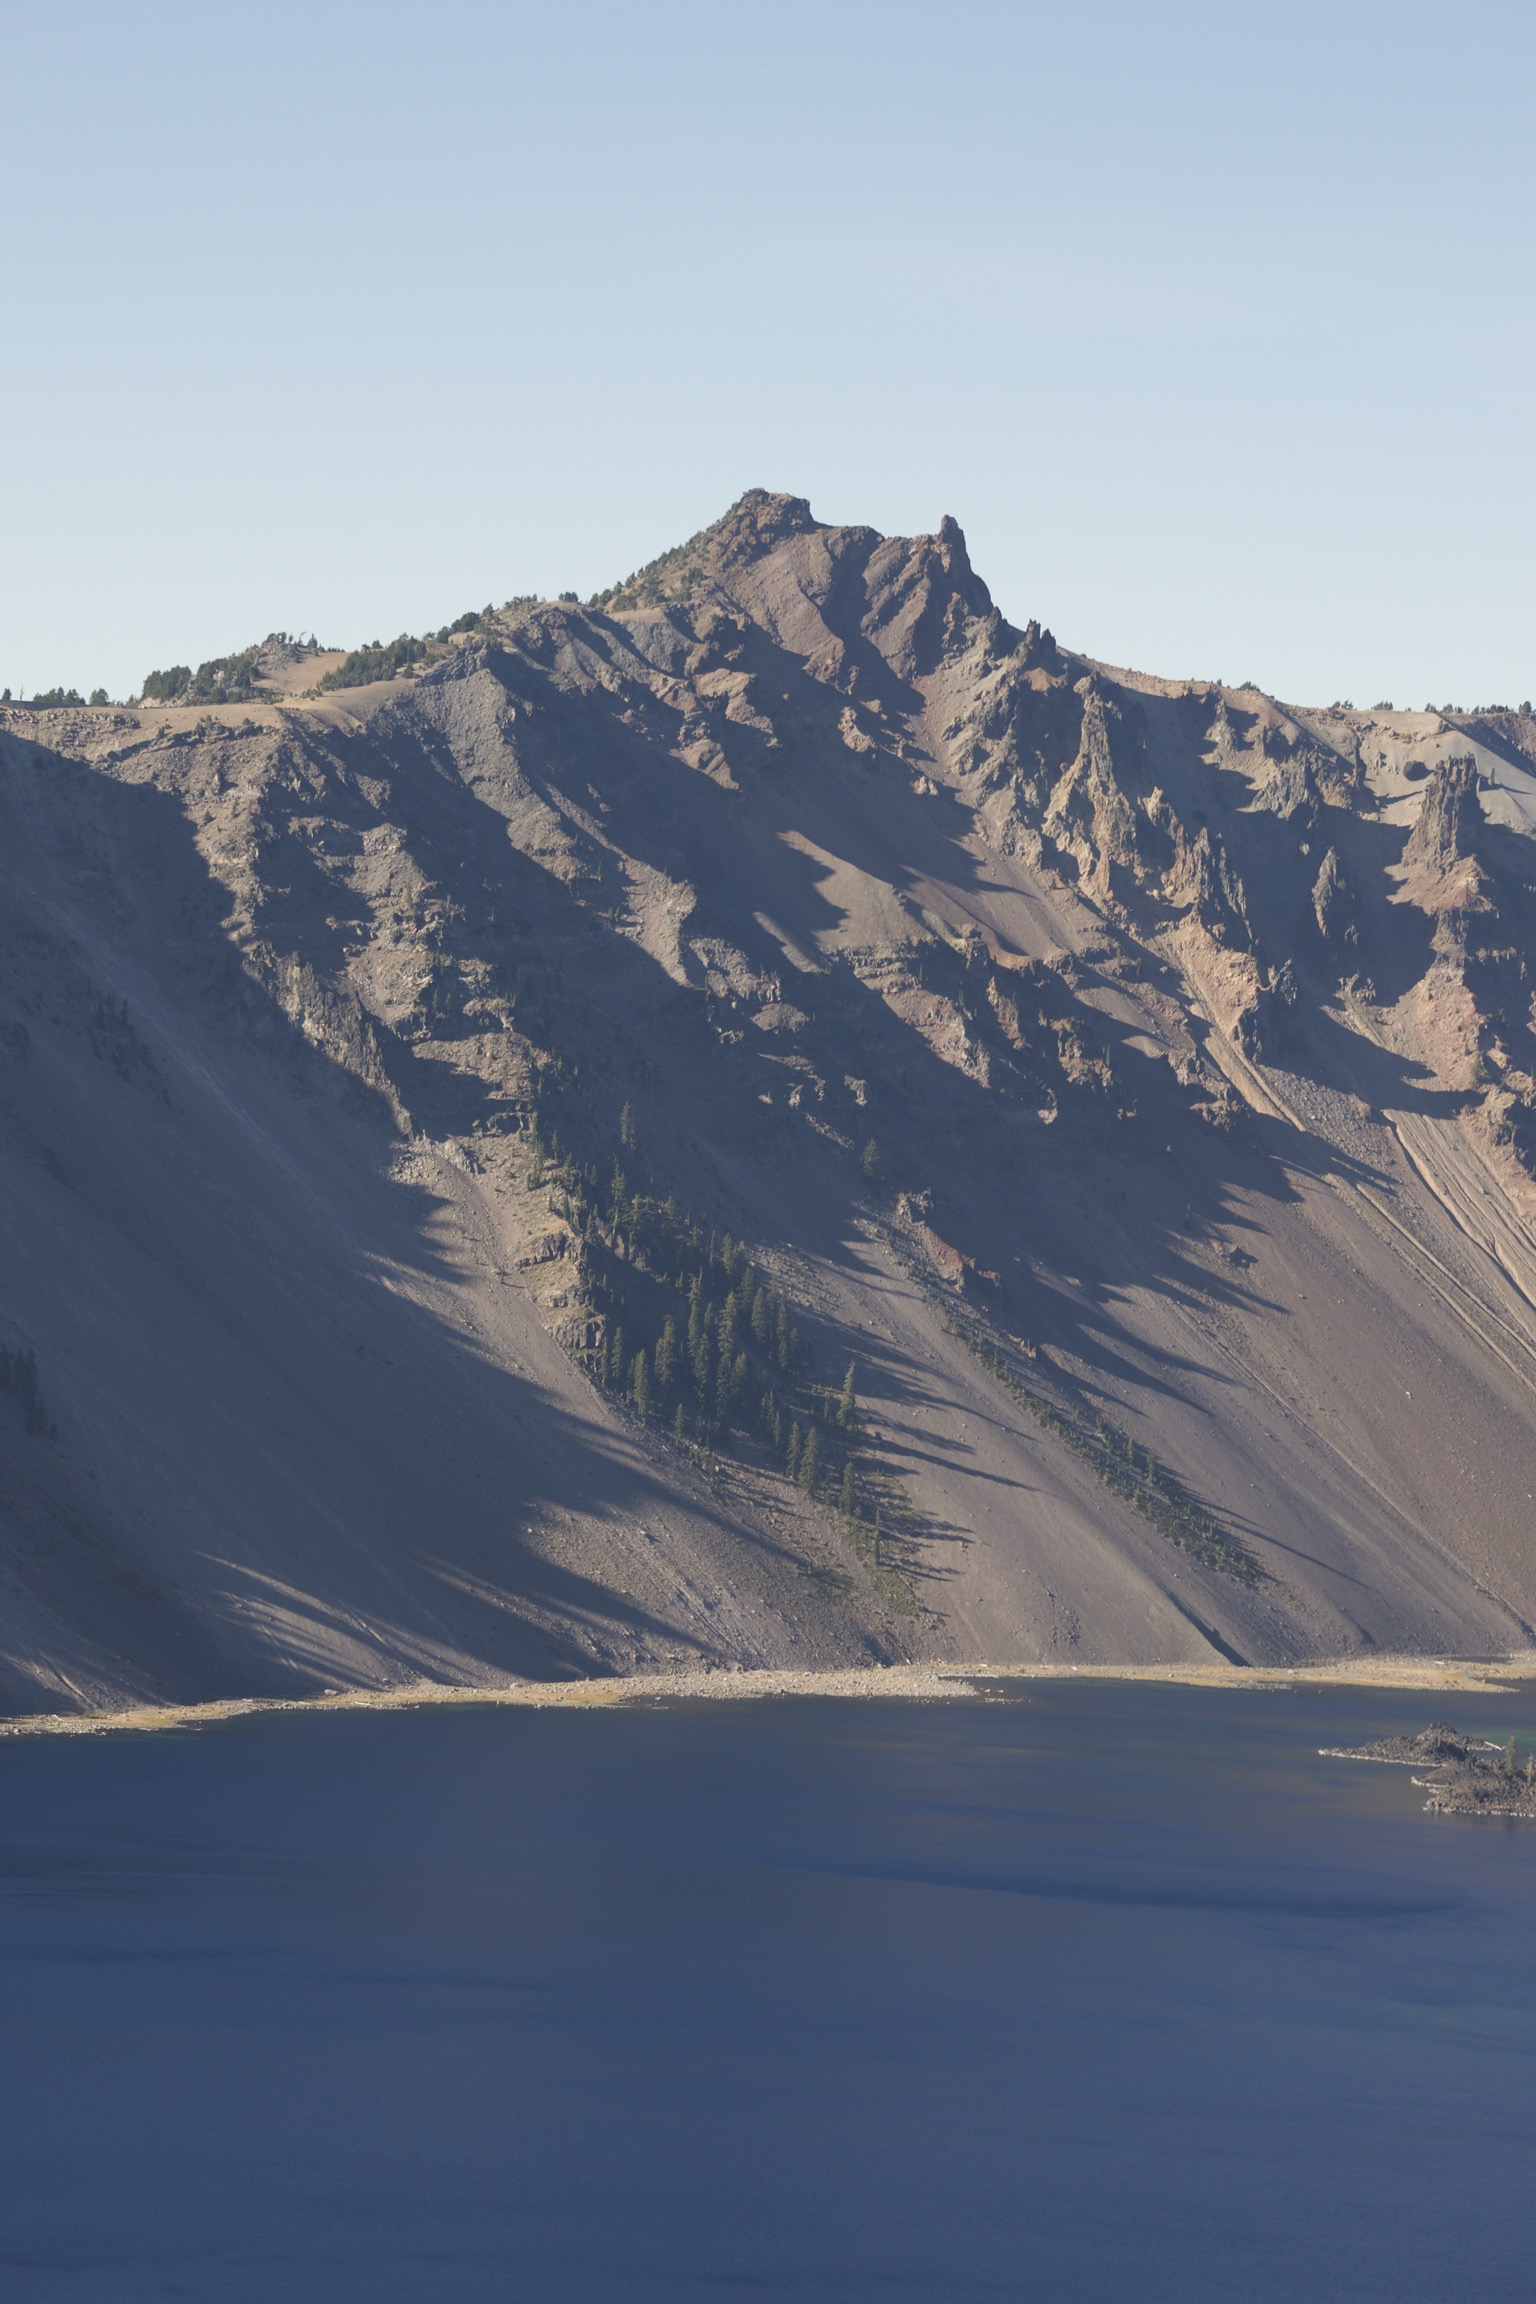 Rocky, mountainous, barren slopes meet the lake.